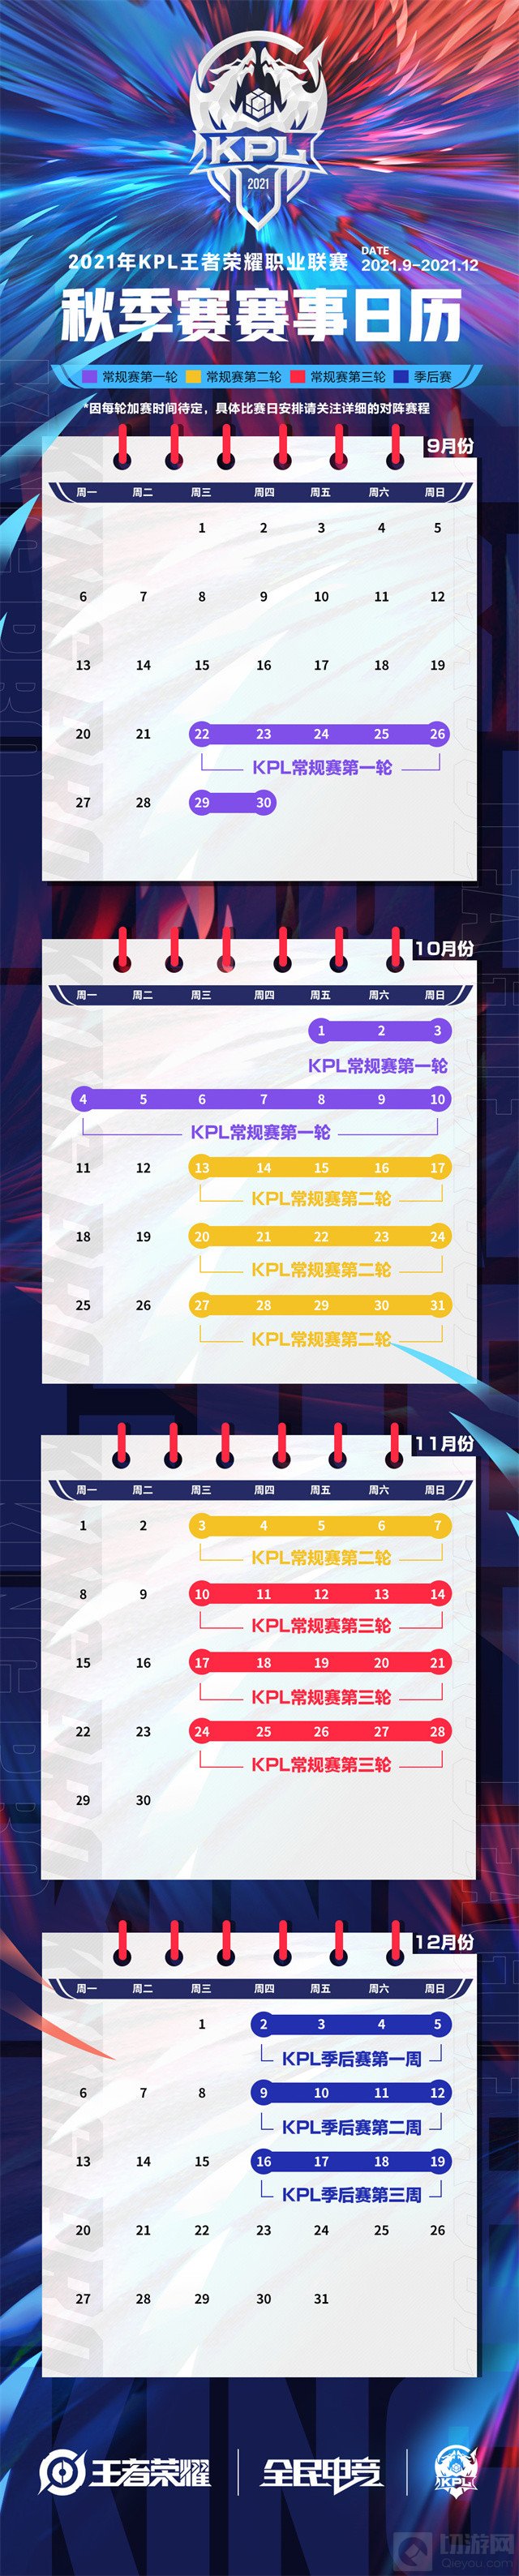 王者荣耀2021kpl秋季赛赛程介绍 王者2021KPL比赛赛程日历